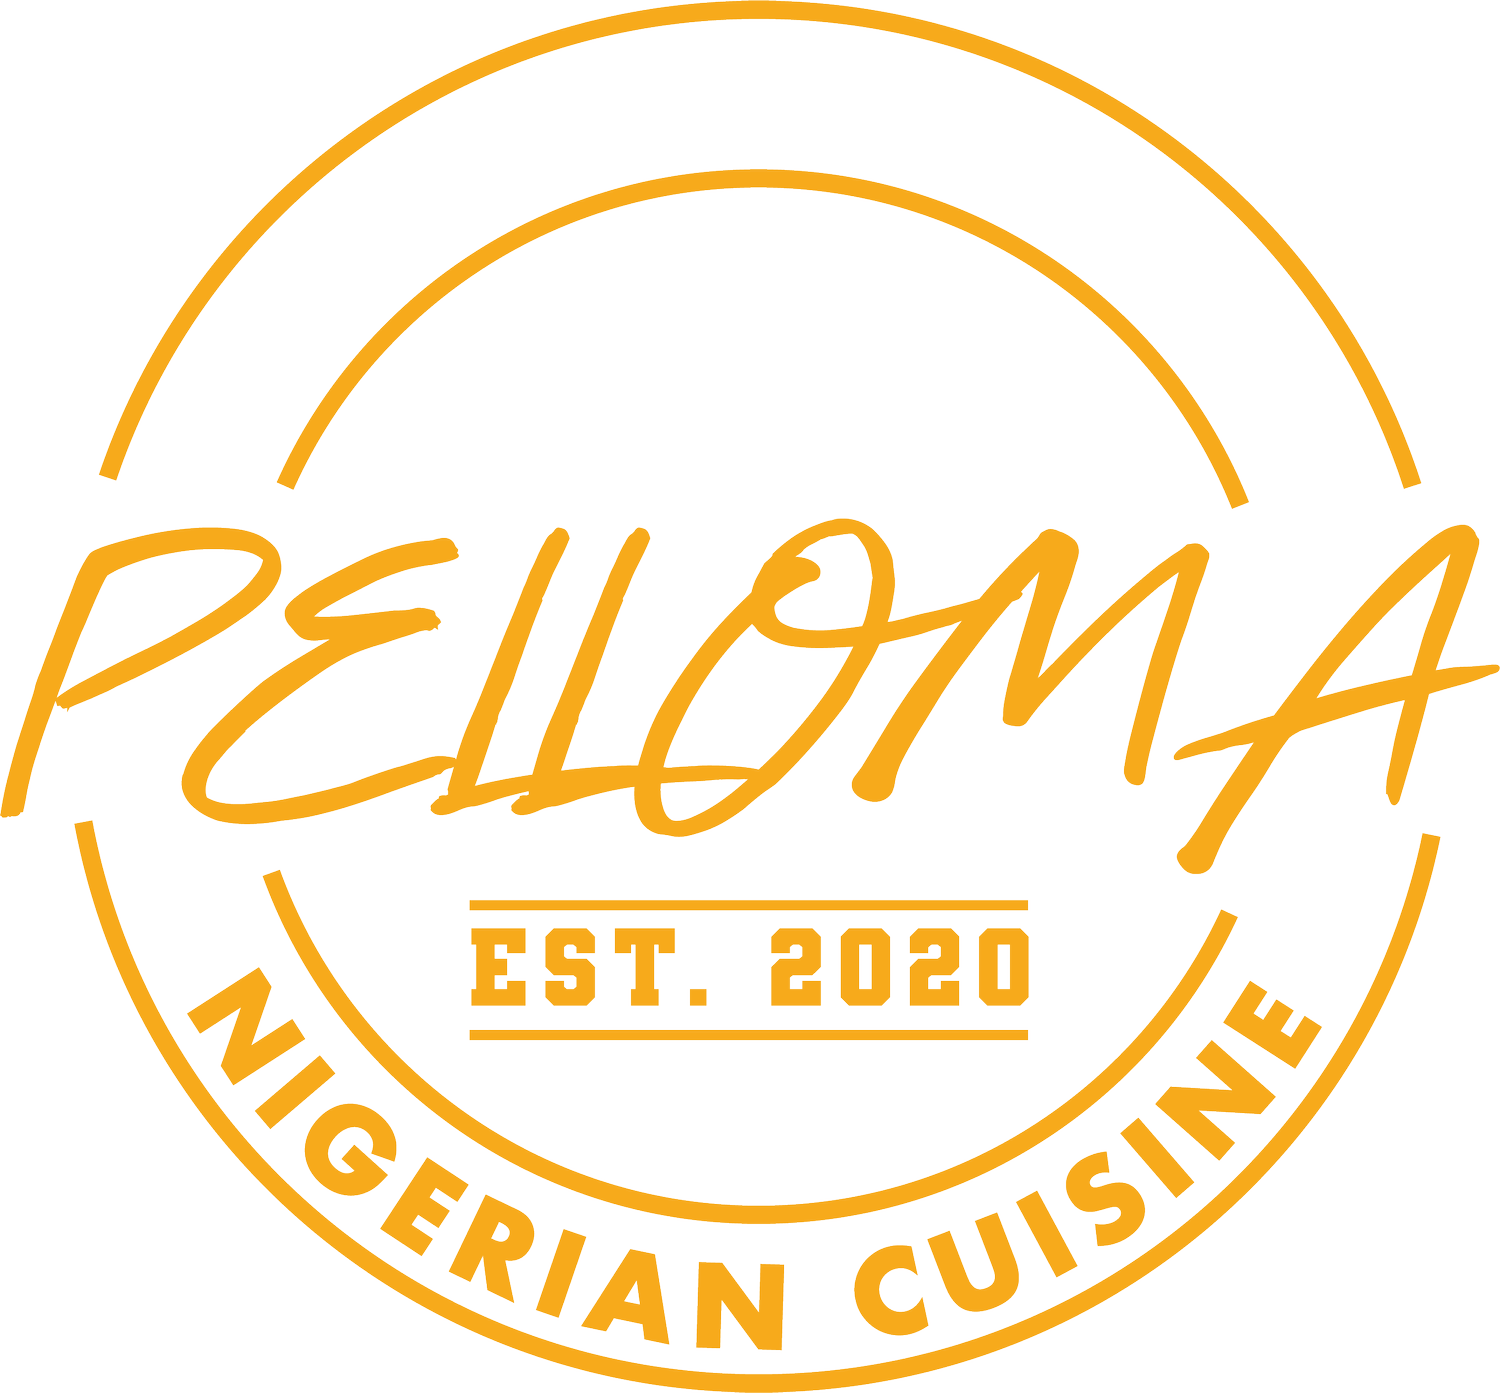 Pelloma Cuisine